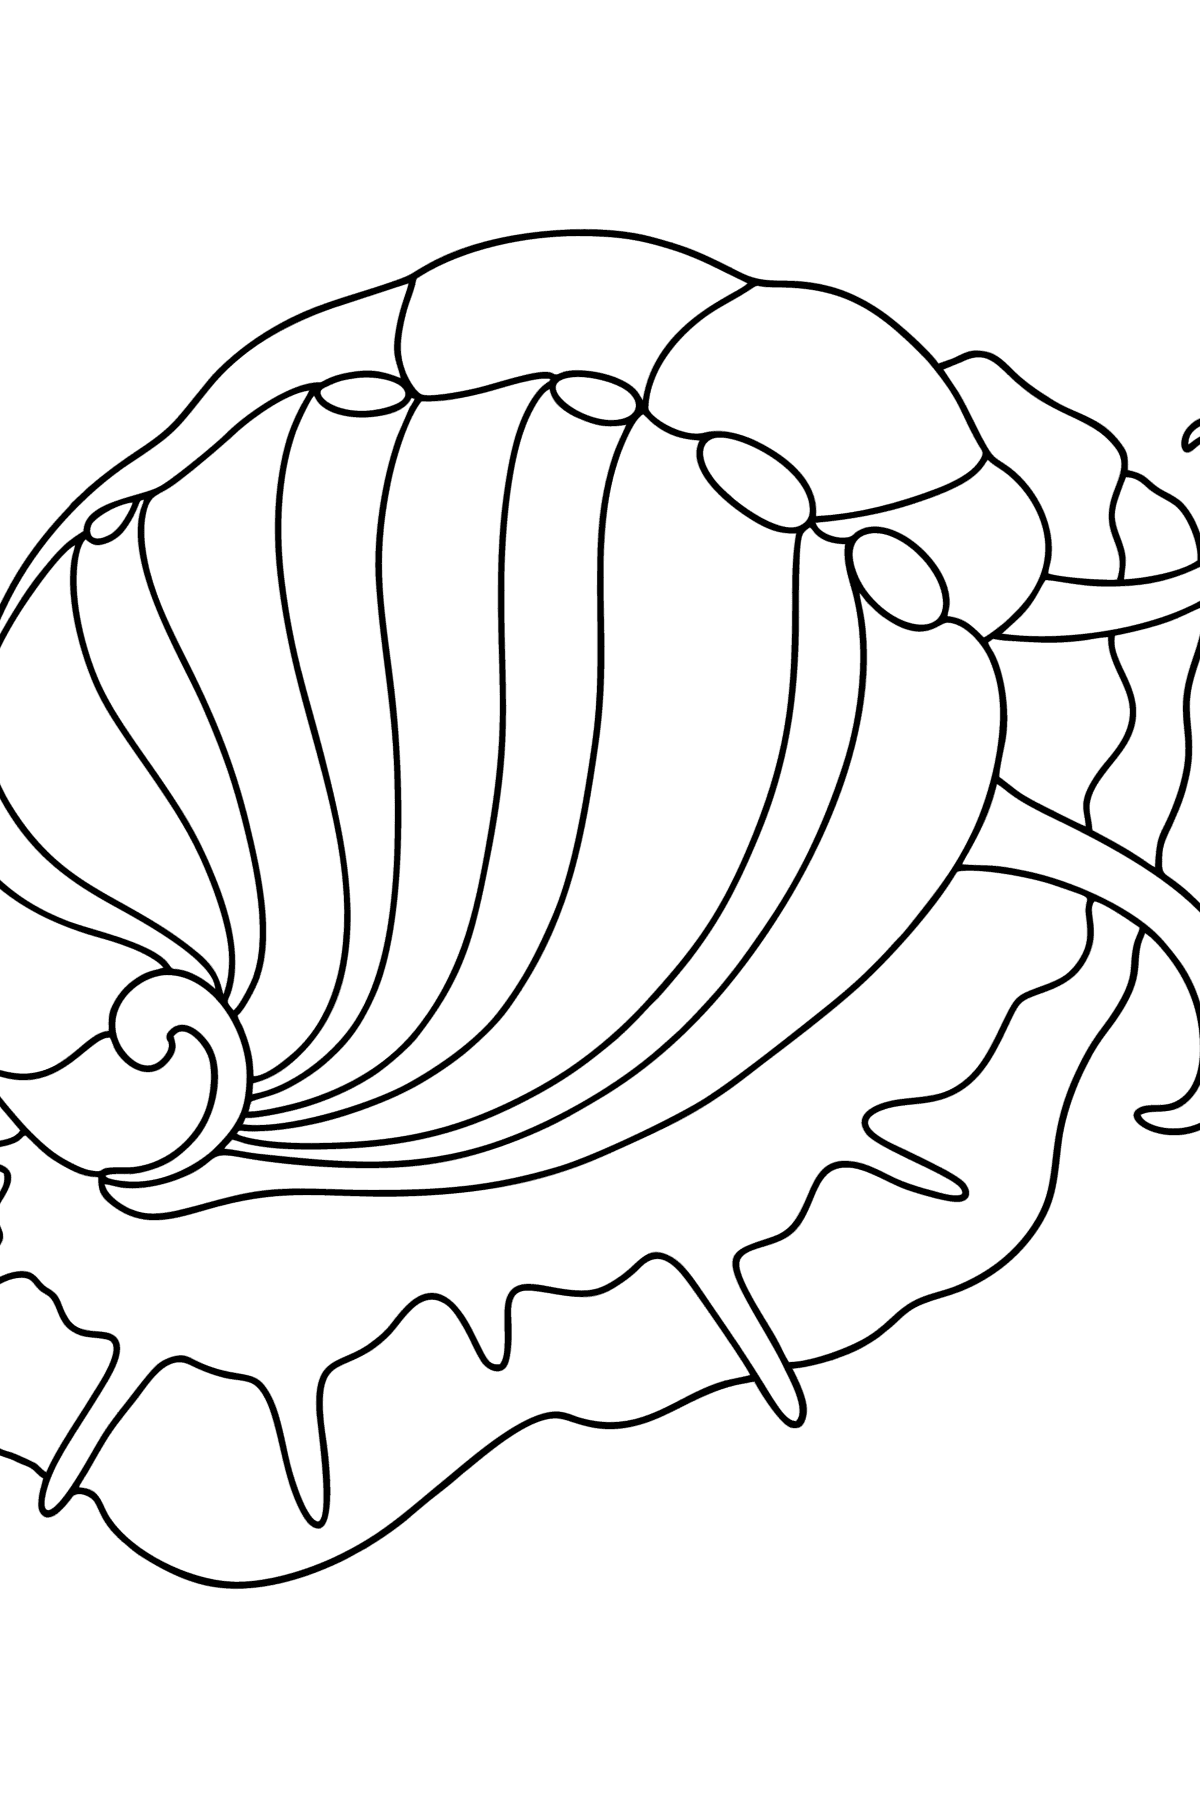 Desenho de Molusco abalone para colorir - Imagens para Colorir para Crianças